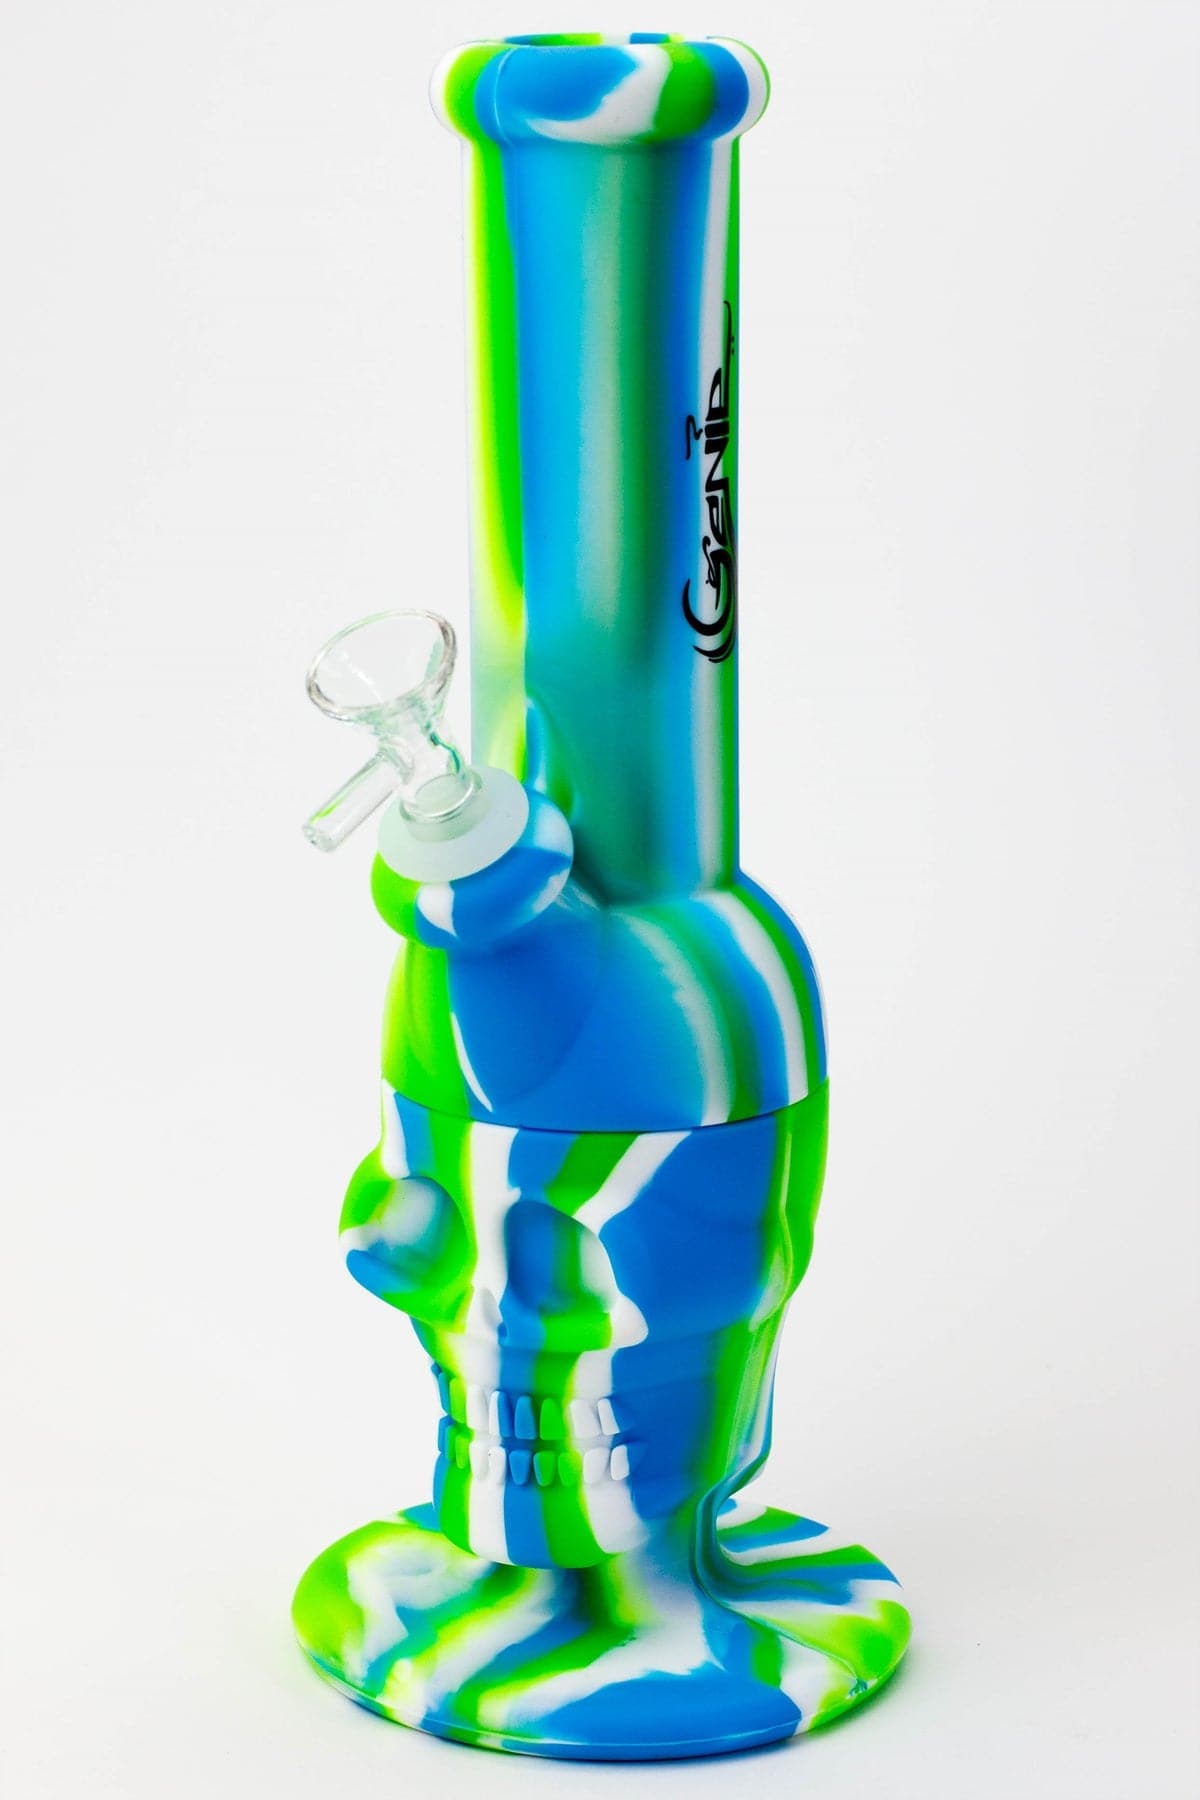 Genie skull multi colored detachable silicone water pipe